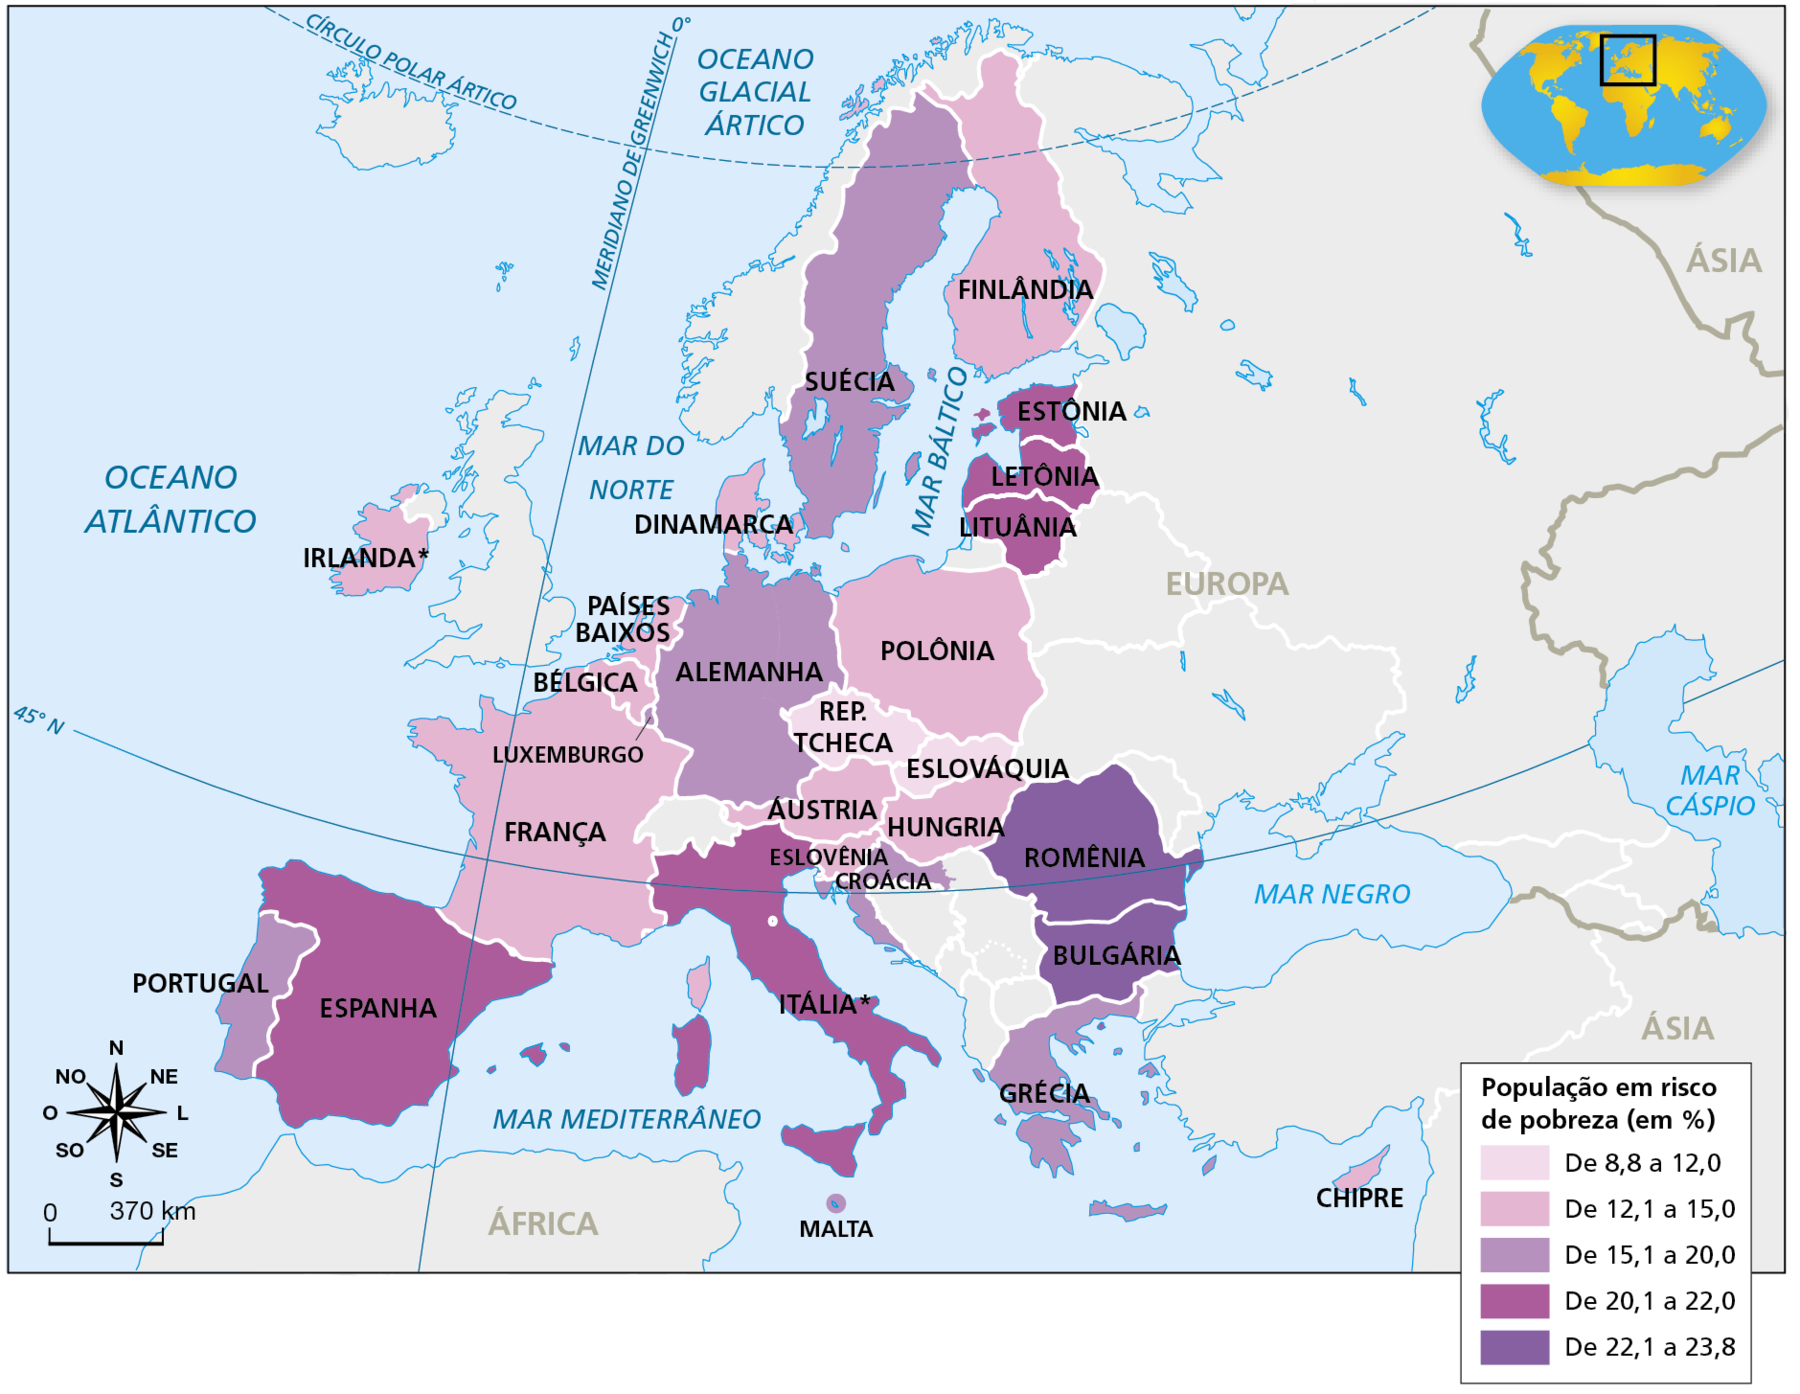 Mapa. União Europeia: risco de pobreza, 2020. Mapa do continente europeu mostrando a porcentagem de população em risco de pobreza por país. De 8,8% a 12,0%: República Tcheca e Eslováquia. De 12,1% a 15,0%: Irlanda (dados mais atualizados de 2019 ou 2018), Finlândia, Dinamarca, Países Baixos, Bélgica, Luxemburgo, França, Polônia, Áustria, Hungria, Eslovênia, Chipre. De 15,1% a 20,0%: Portugal, Malta, Grécia, Alemanha e Suécia. De 20,1% a 22,0%: Espanha, Itália (dados mais atualizados de 2019 ou 2018), Estônia, Letônia e Lituânia. De 22,1% a 23,8%: Romênia e Bulgária. Na parte inferior esquerda, rosa dos ventos e escala de 0 a 370 quilômetros.